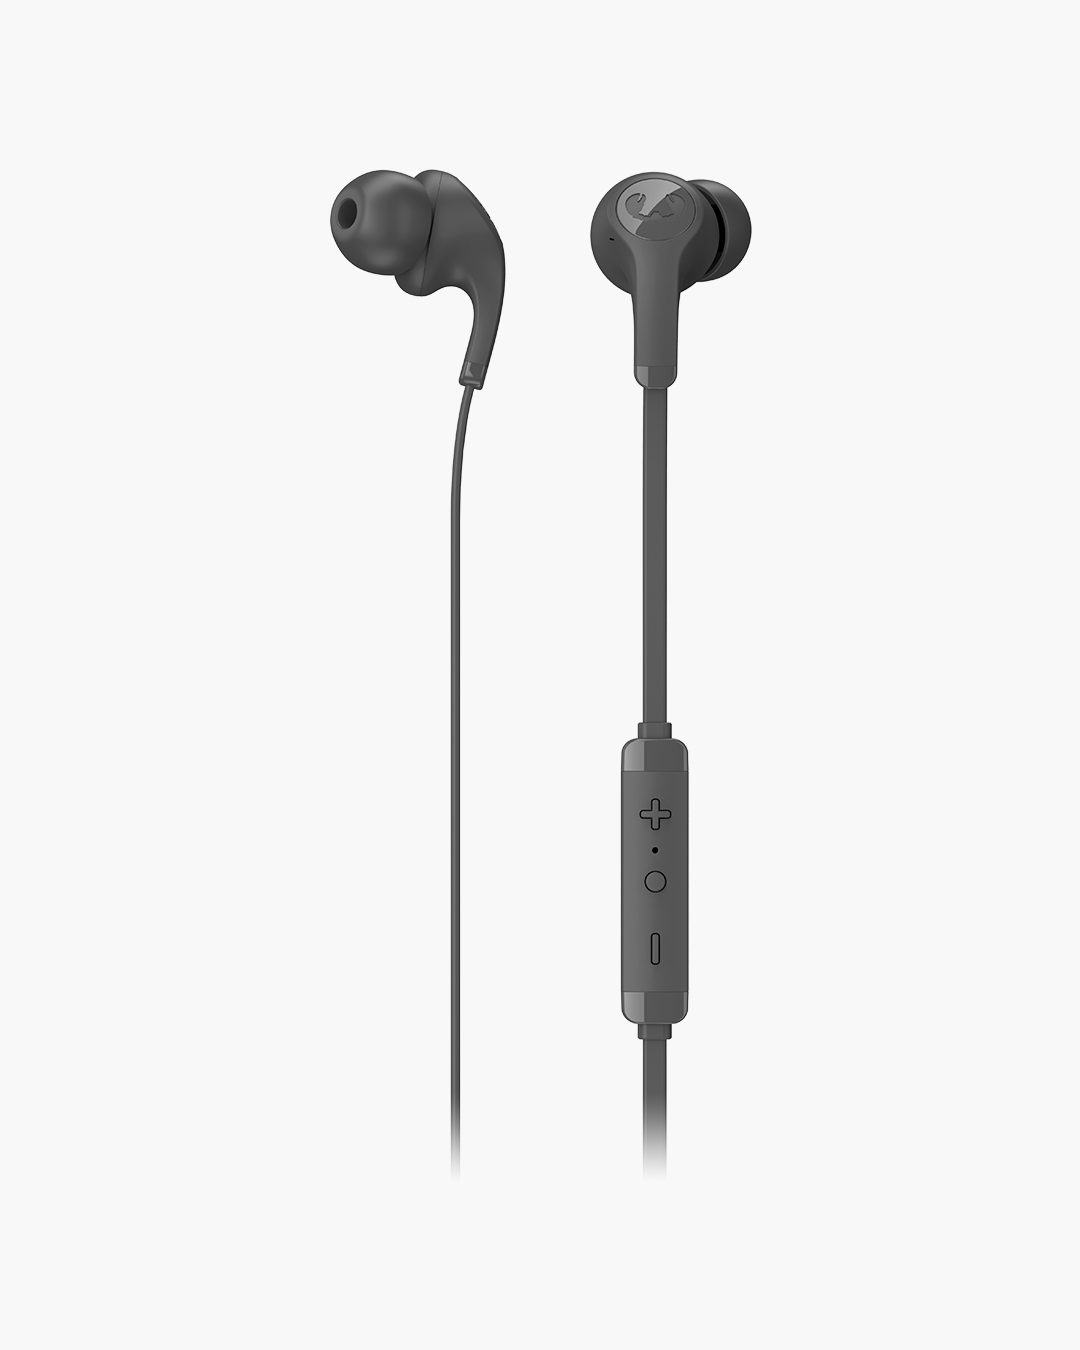 Fresh 'n Rebel - Flow - In-ear headphones with ear tip - Storm Grey